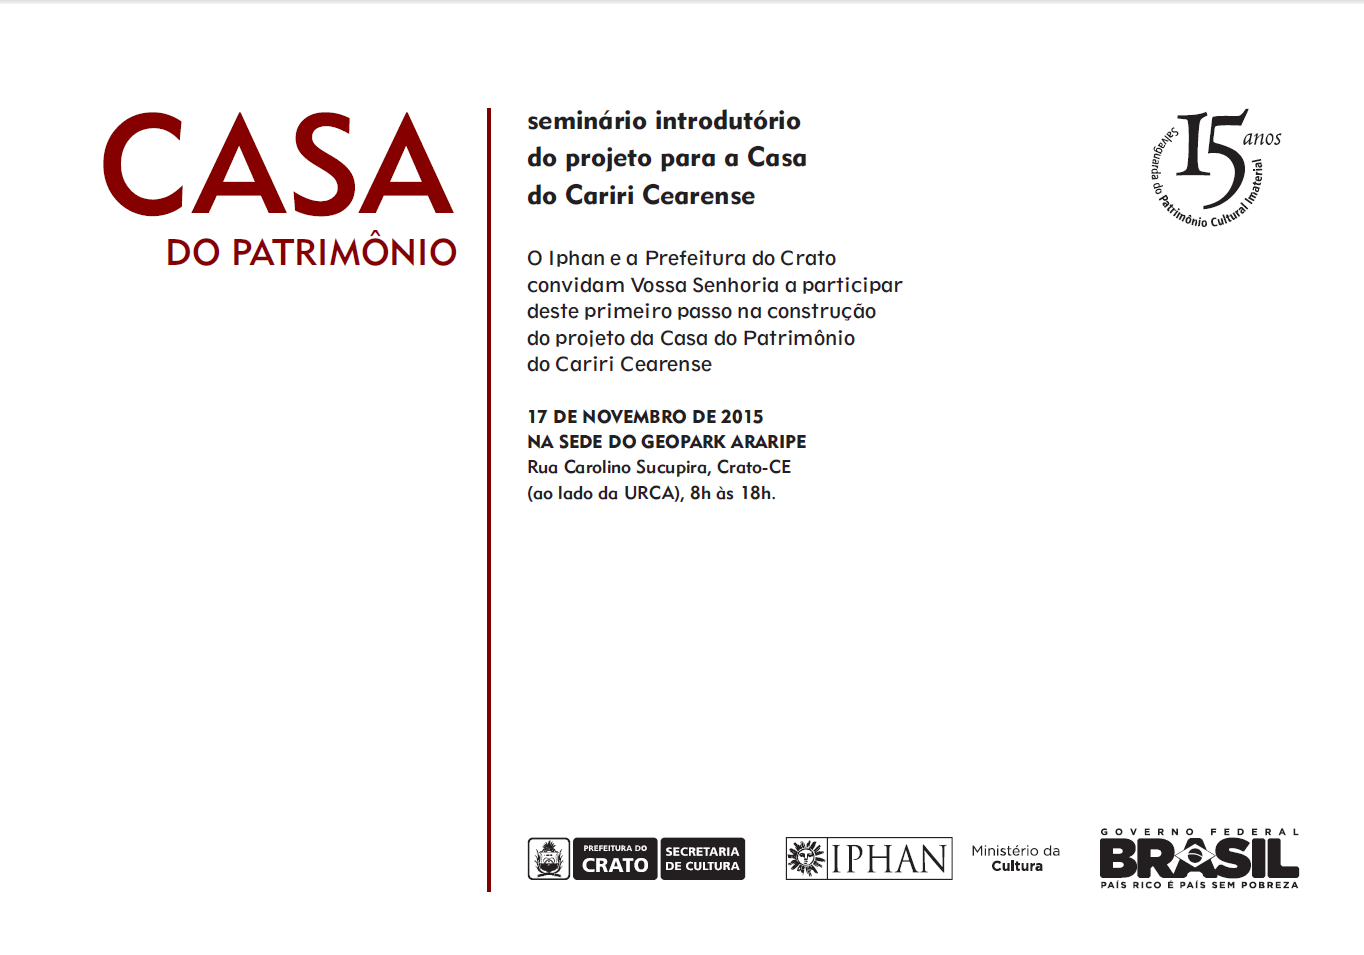 Em Crato acontecerá seminário introdutório do projeto para a Casa do Cariri Cearense.